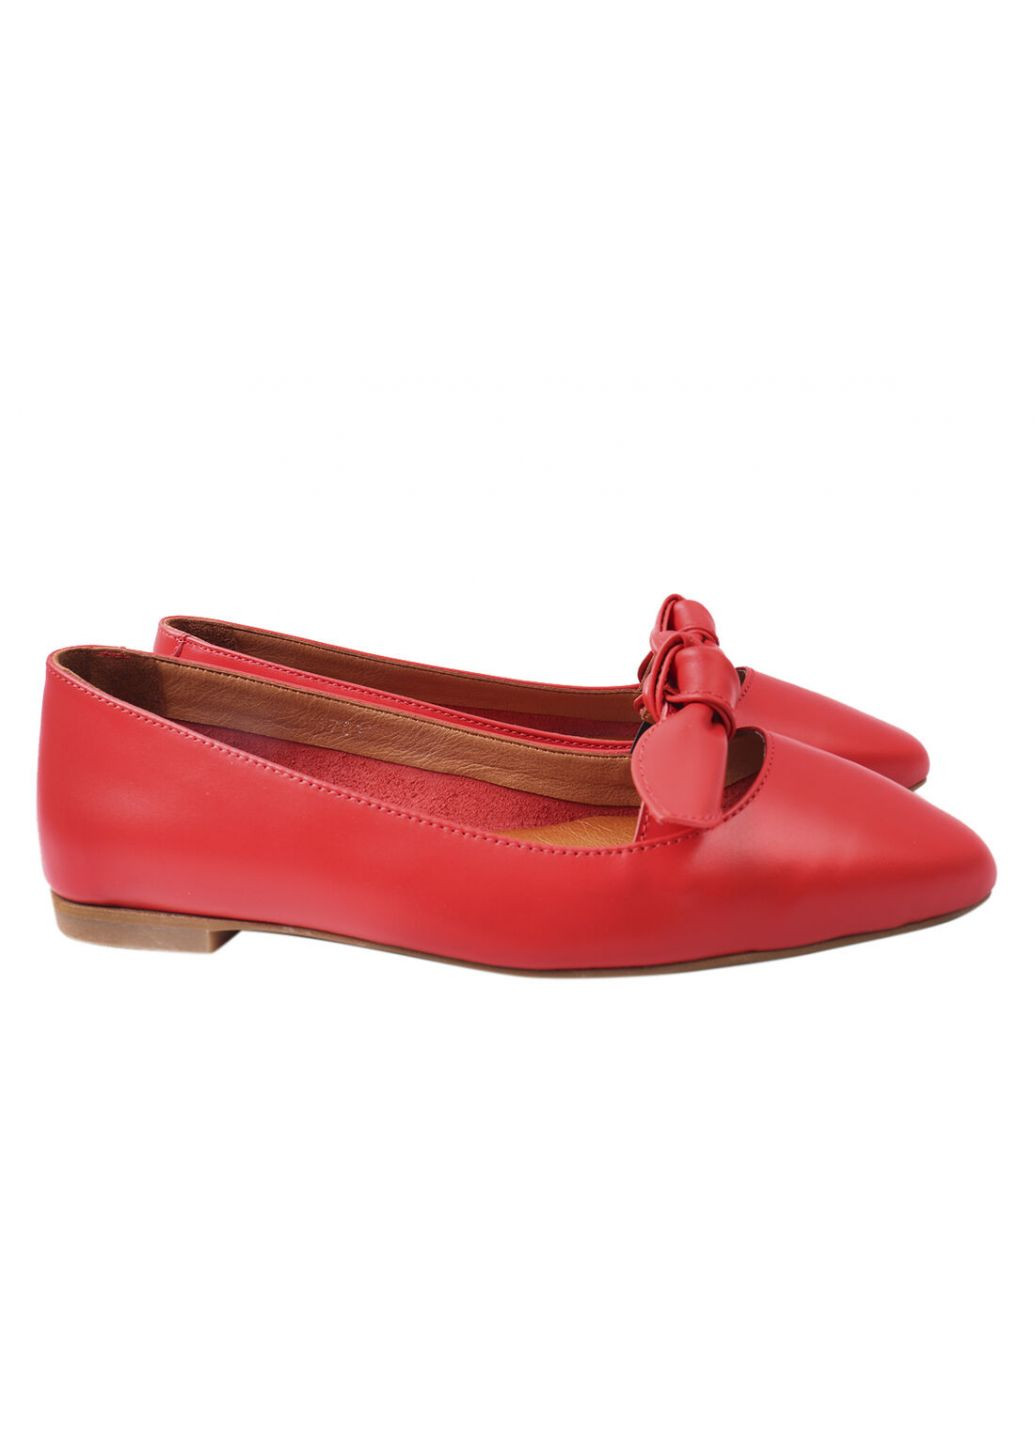 Туфли женские из натуральной кожи, на низком ходу, цвет красный, Турция Mario Muzi